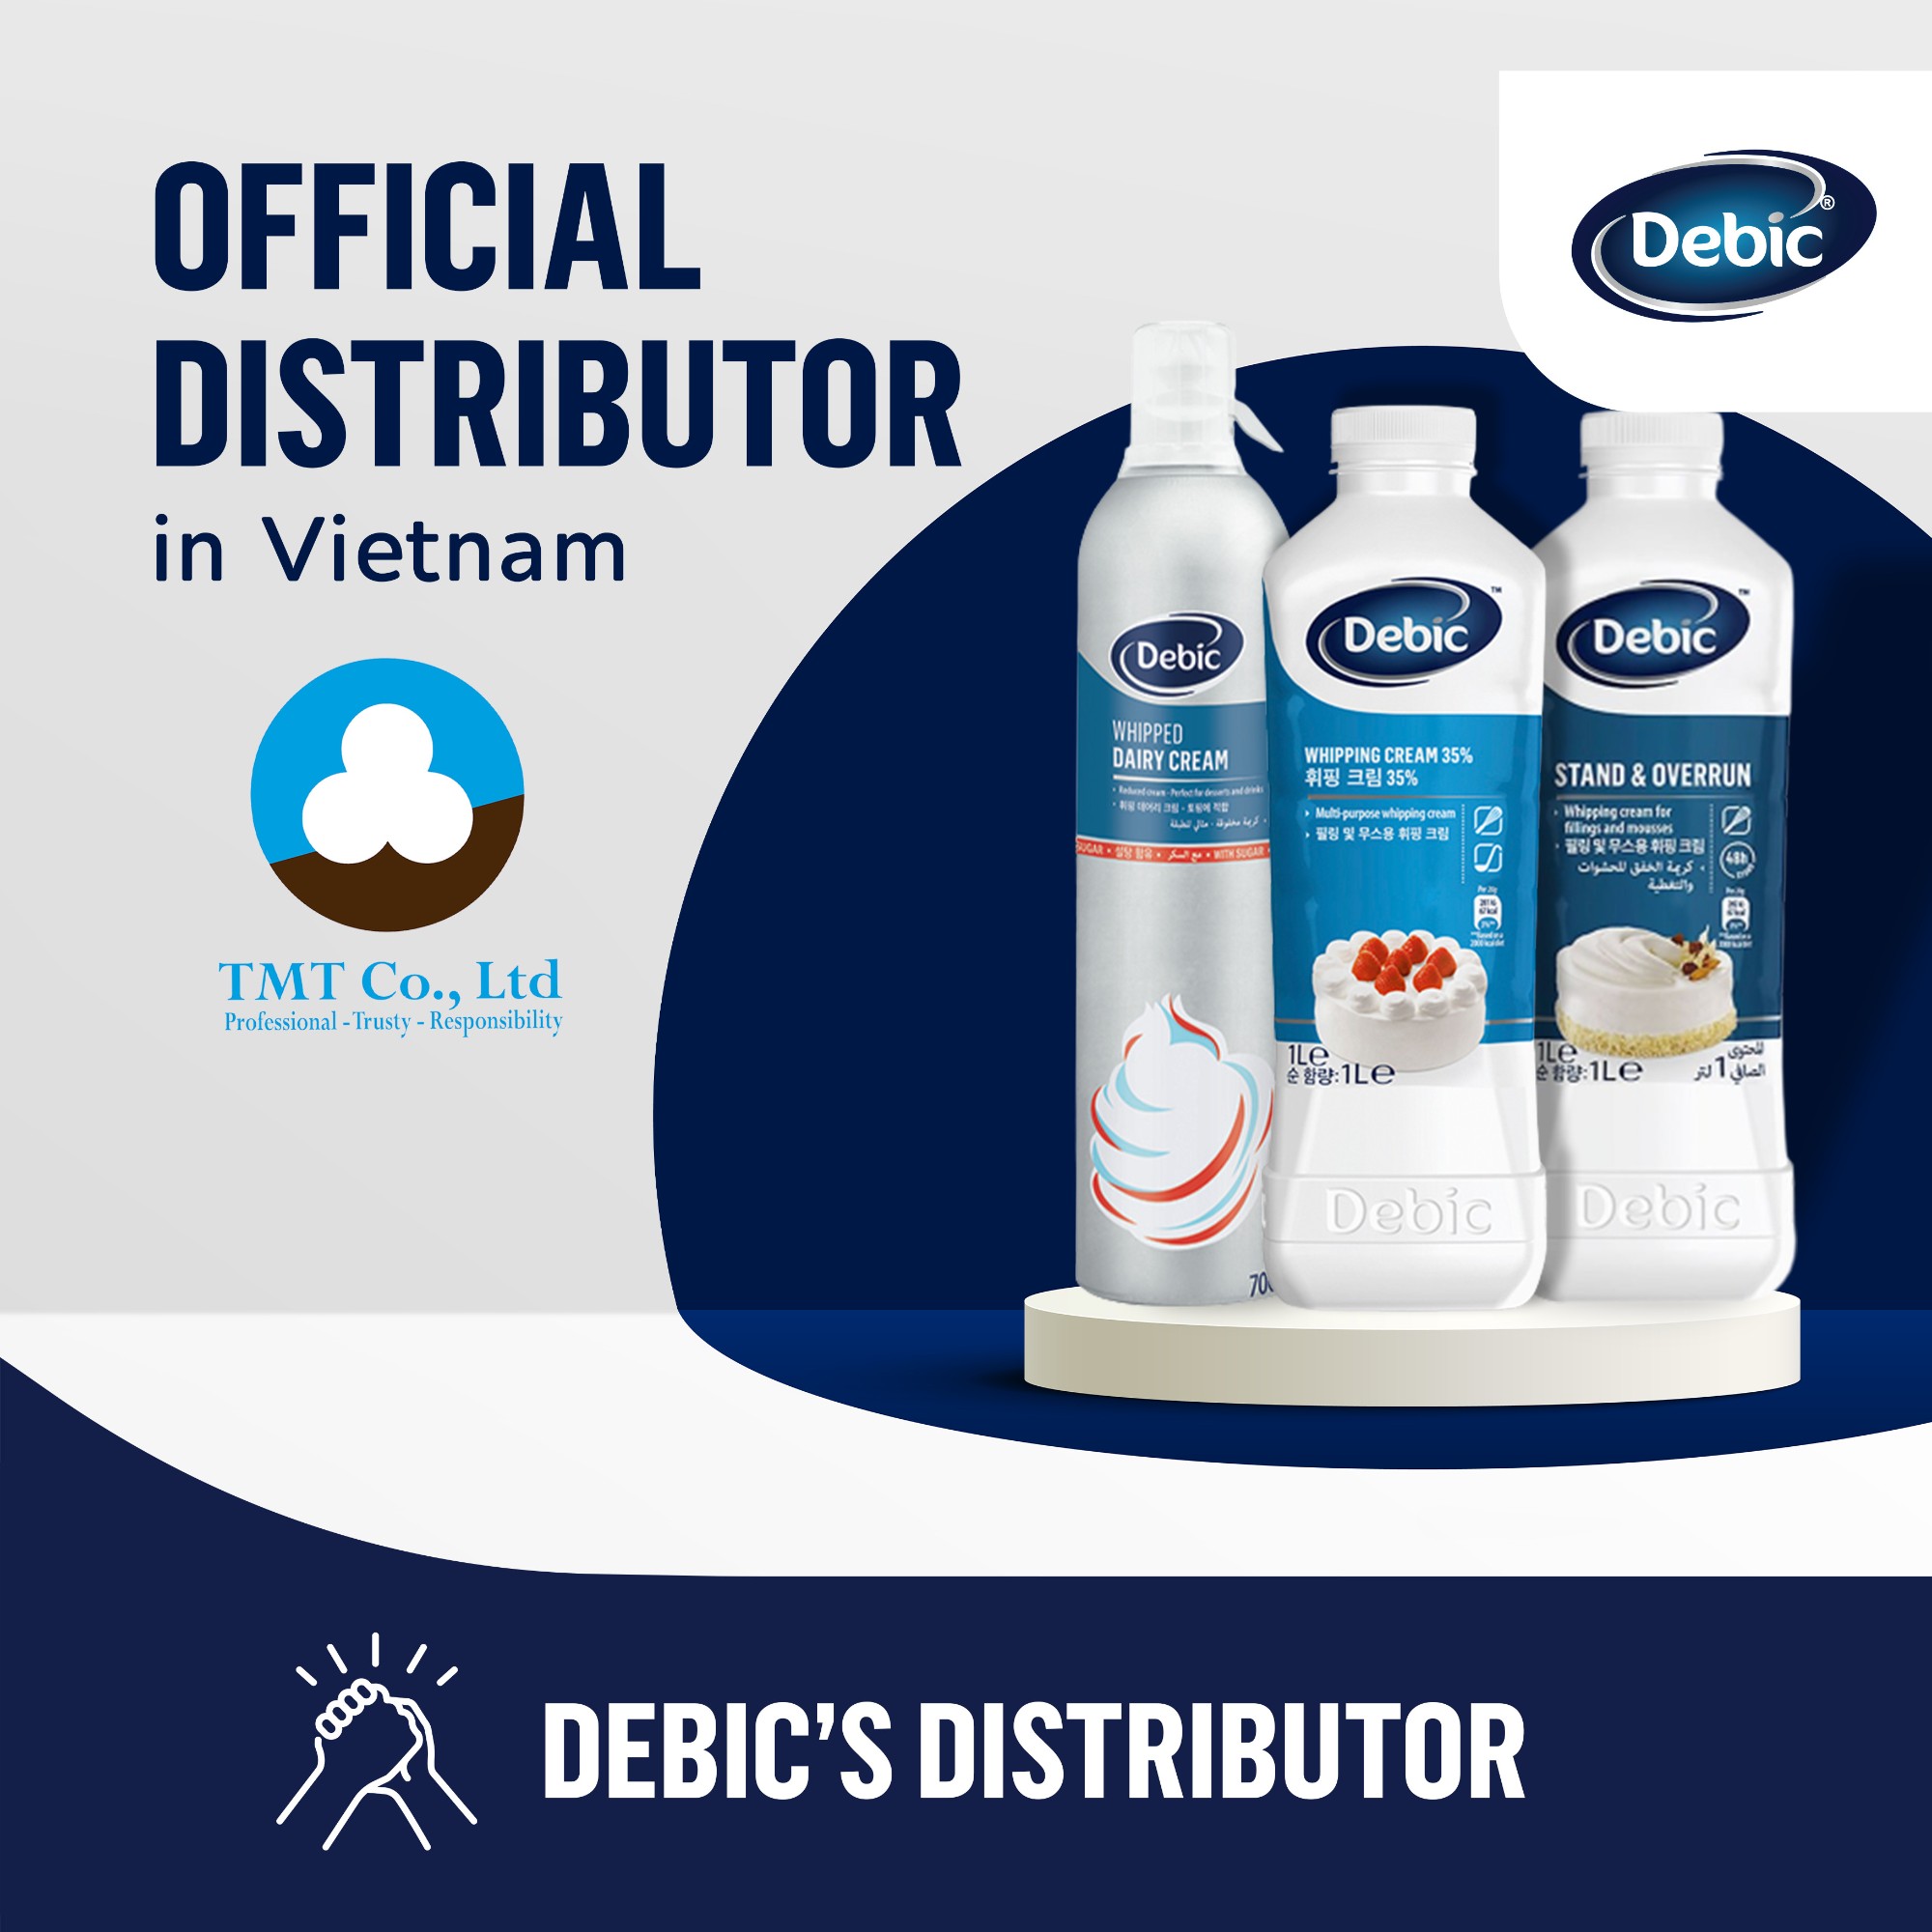 Chào mừng Debic - Nhãn hàng mới được nhập khẩu và phân phối bởi Công ty Trung Minh Thành